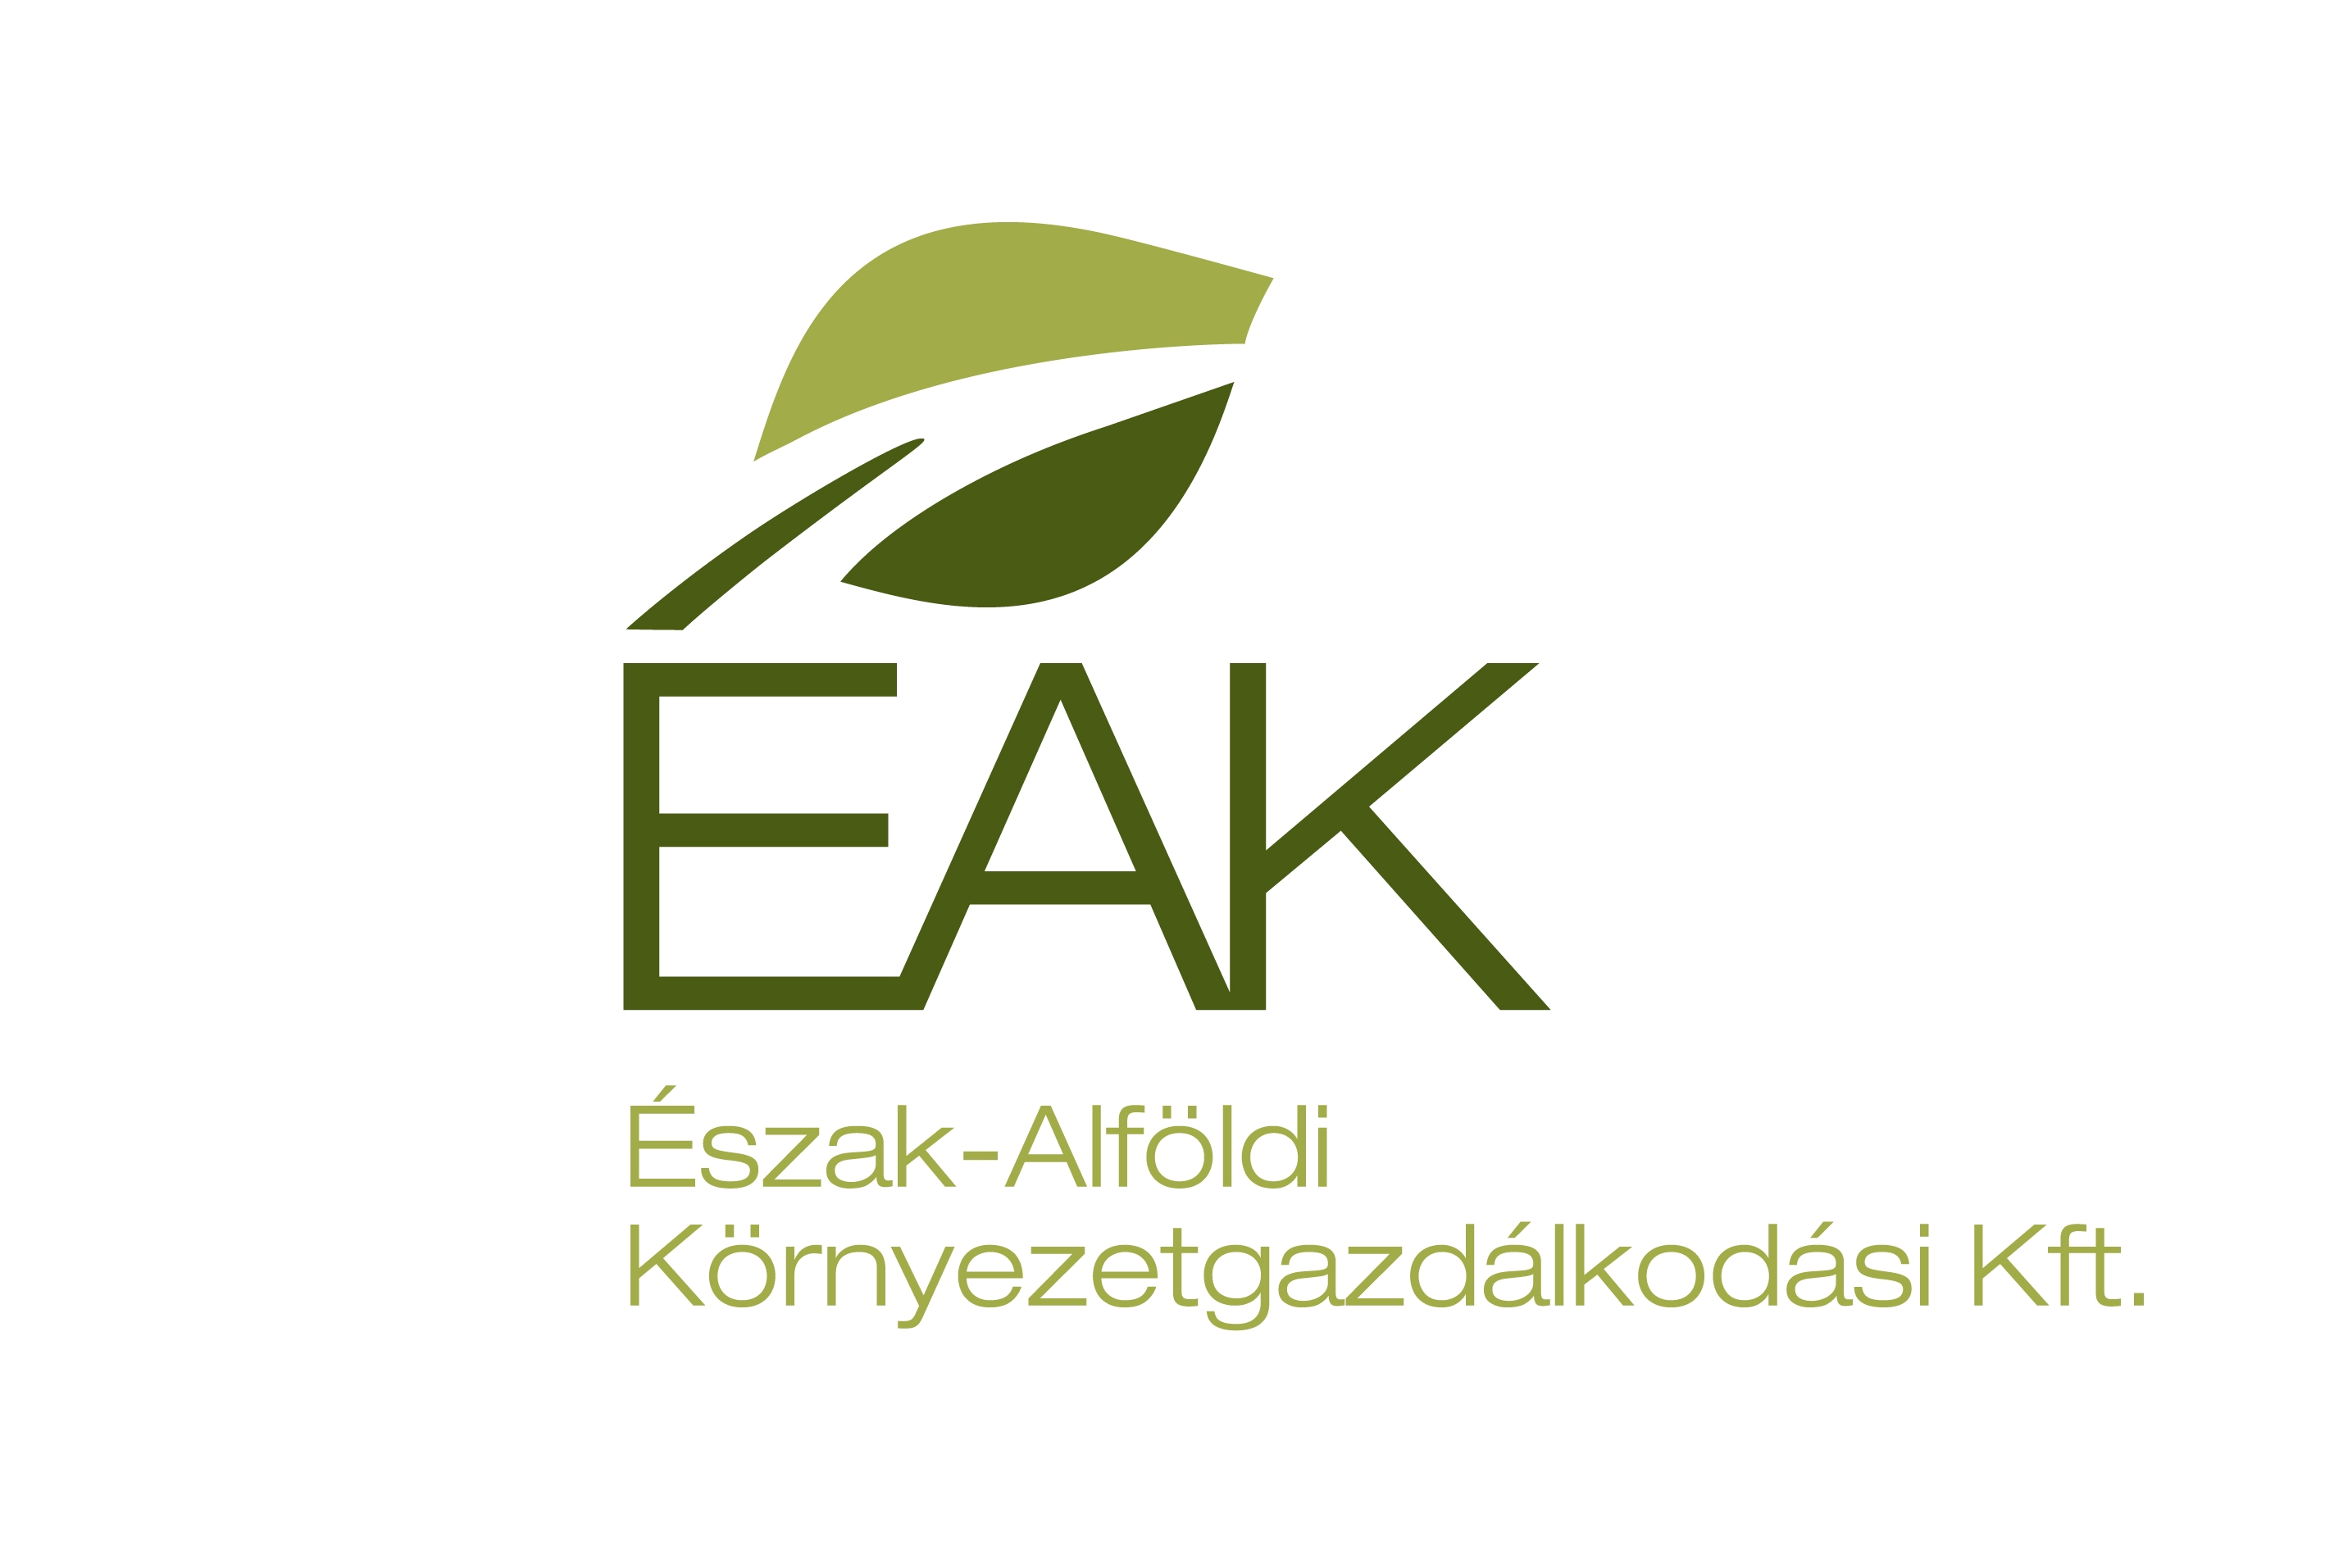 EAK.orig.jpg - 312.90 KB